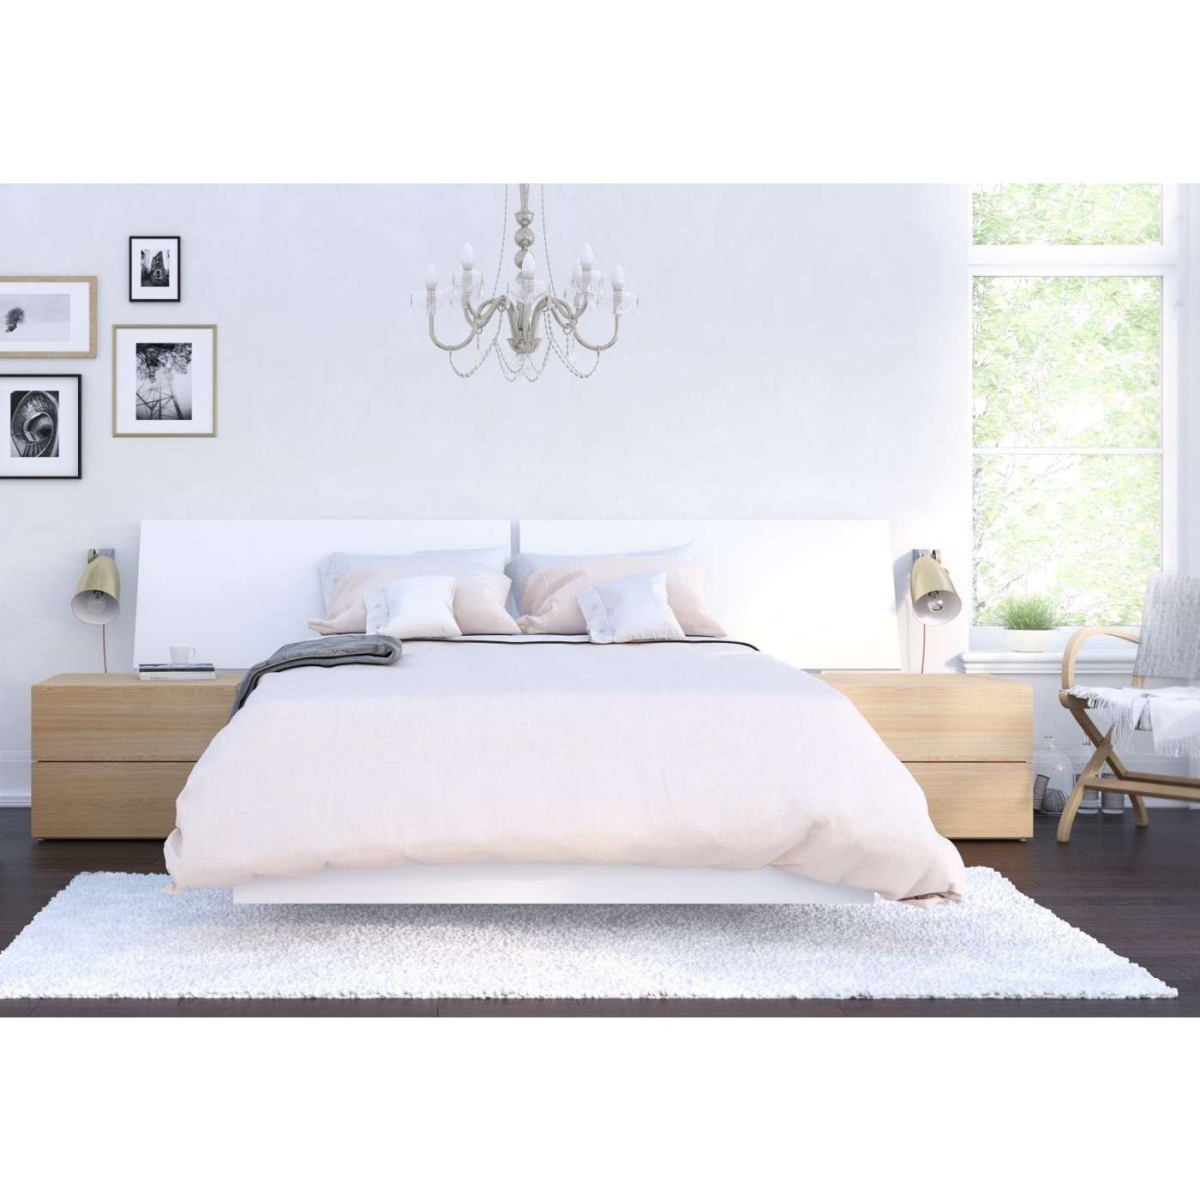 400829 Esker Bedroom Set, Natural Maple & White - Full Size